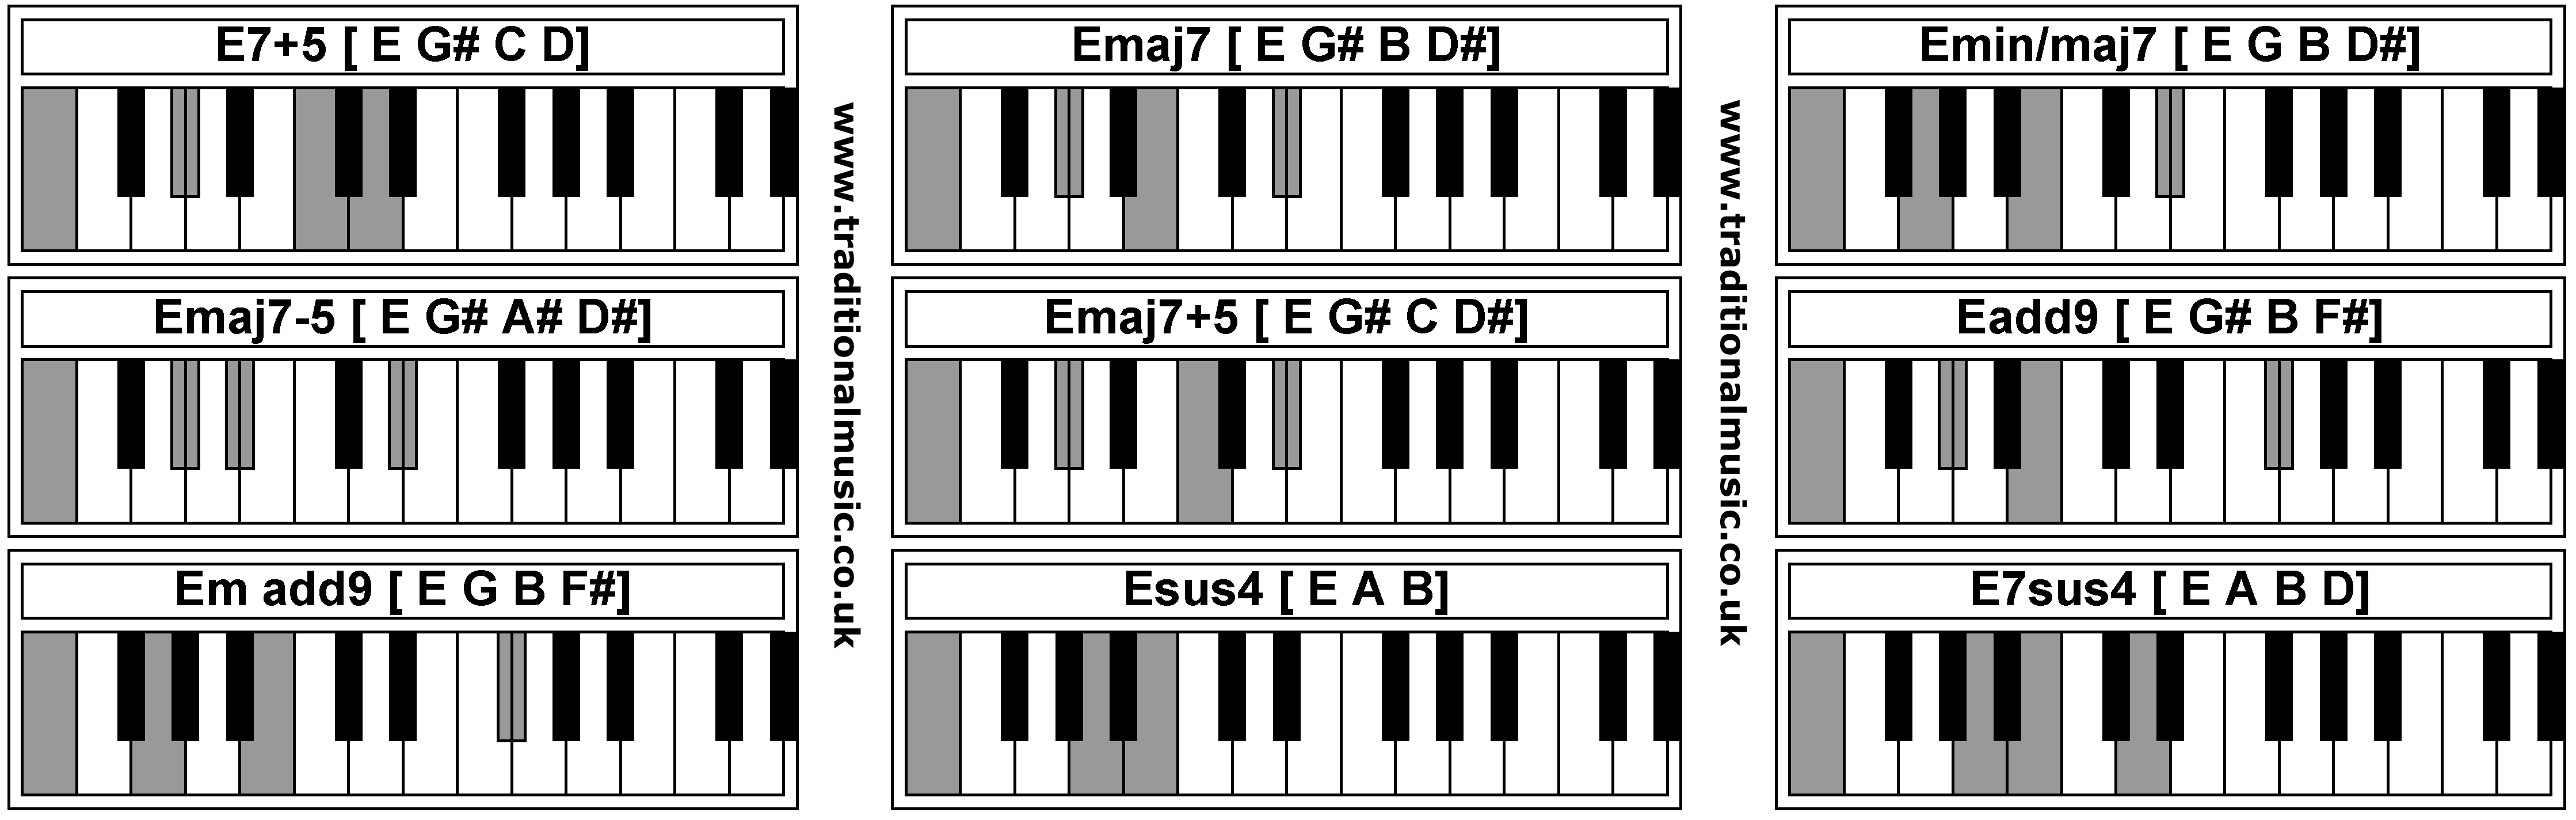 Piano Chords - E7+5  Emaj7  Emin/maj7  Emaj7-5  Emaj7+5  Eadd9  Em add9  Esus4  E7sus4